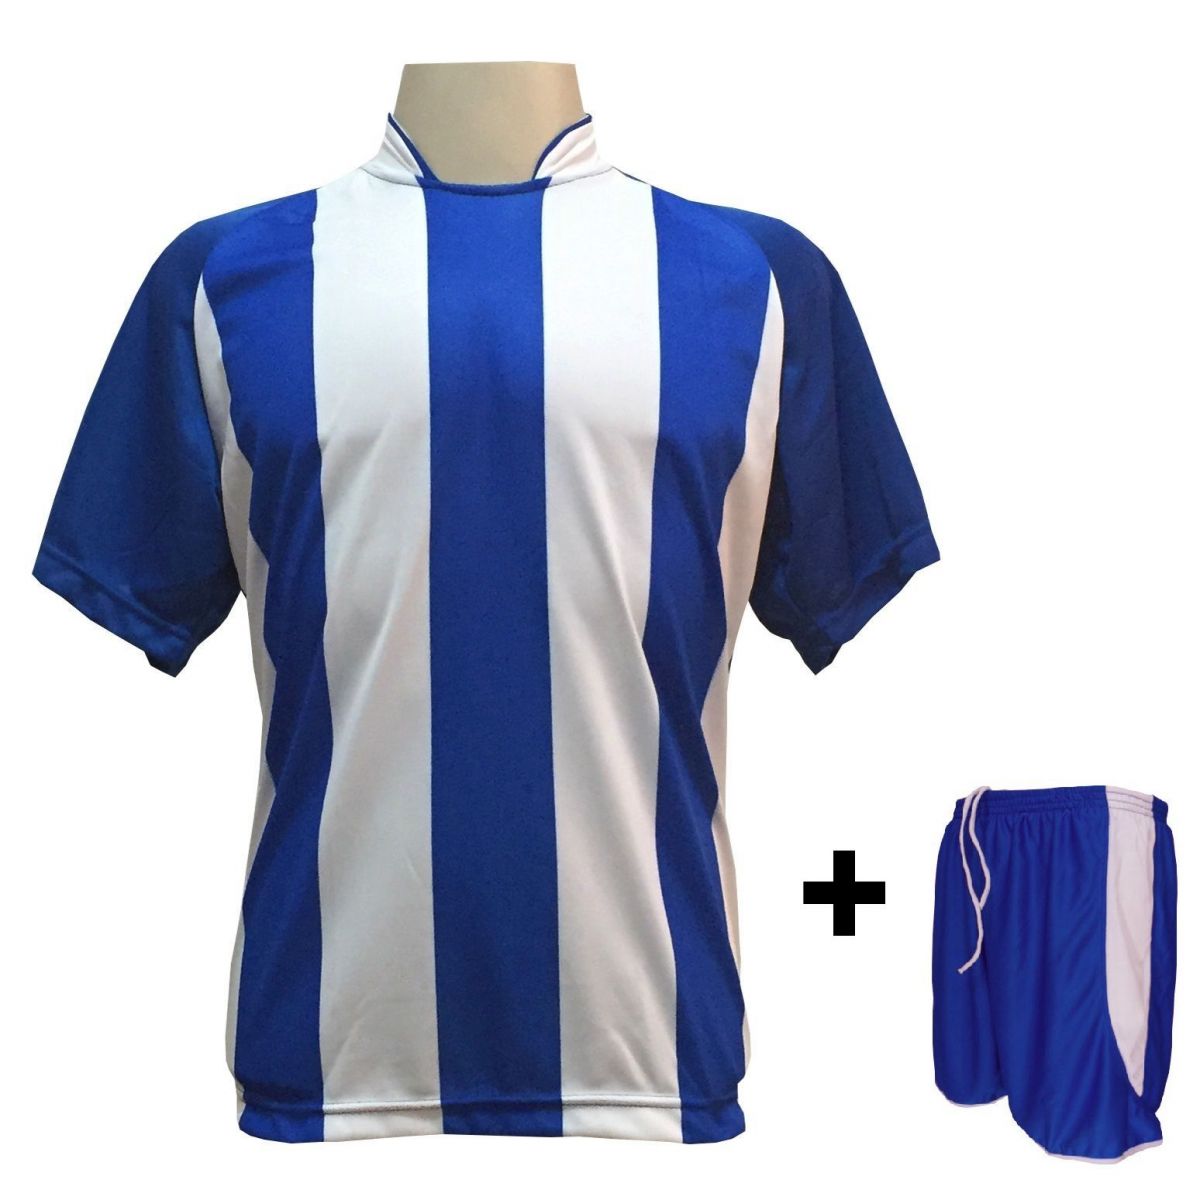 Uniforme Esportivo com 18 camisas modelo Milan Royal/Branco + 18 calções modelo Copa + 1 Goleiro + Brindes